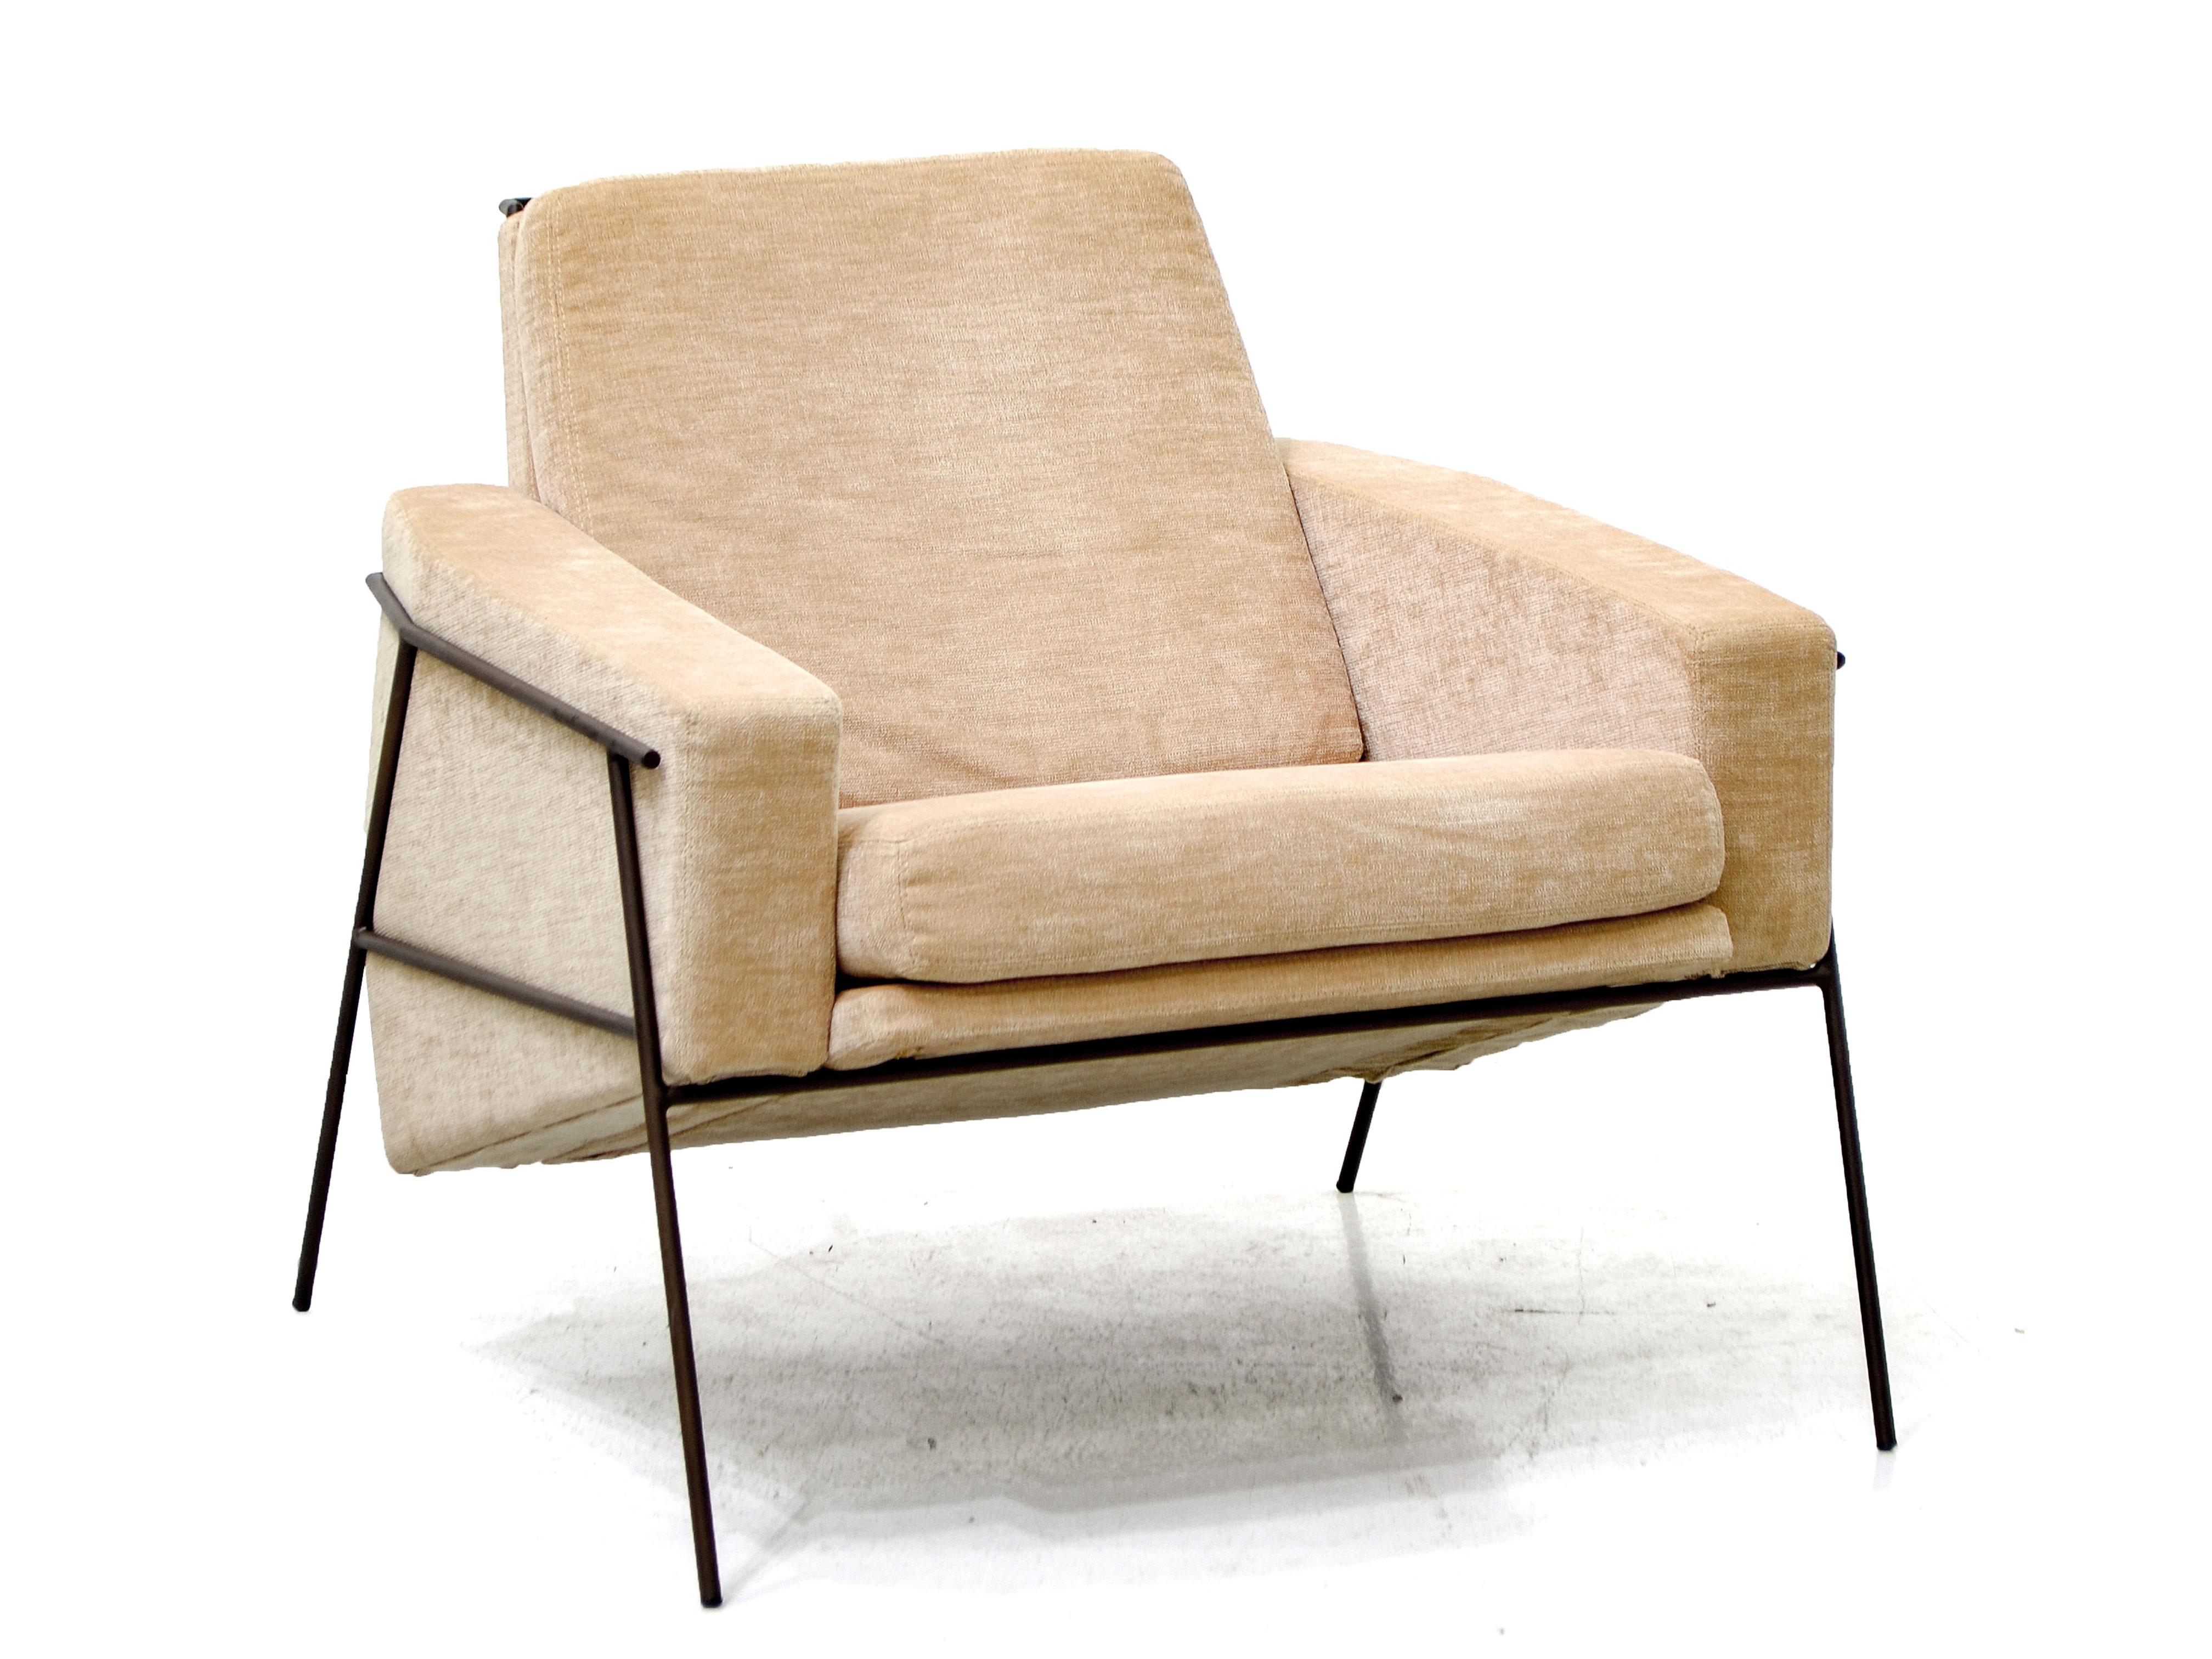 Dieser schöne, schlichte und elegante Sessel aus lackiertem Stahl kann mit verschiedenen Stoffen oder Leder gepolstert werden.

Dieser Sessel kann auch ohne den dazugehörigen Hocker verkauft werden.

Zanini de Zanine wurde 1978 in Rio de Janeiro